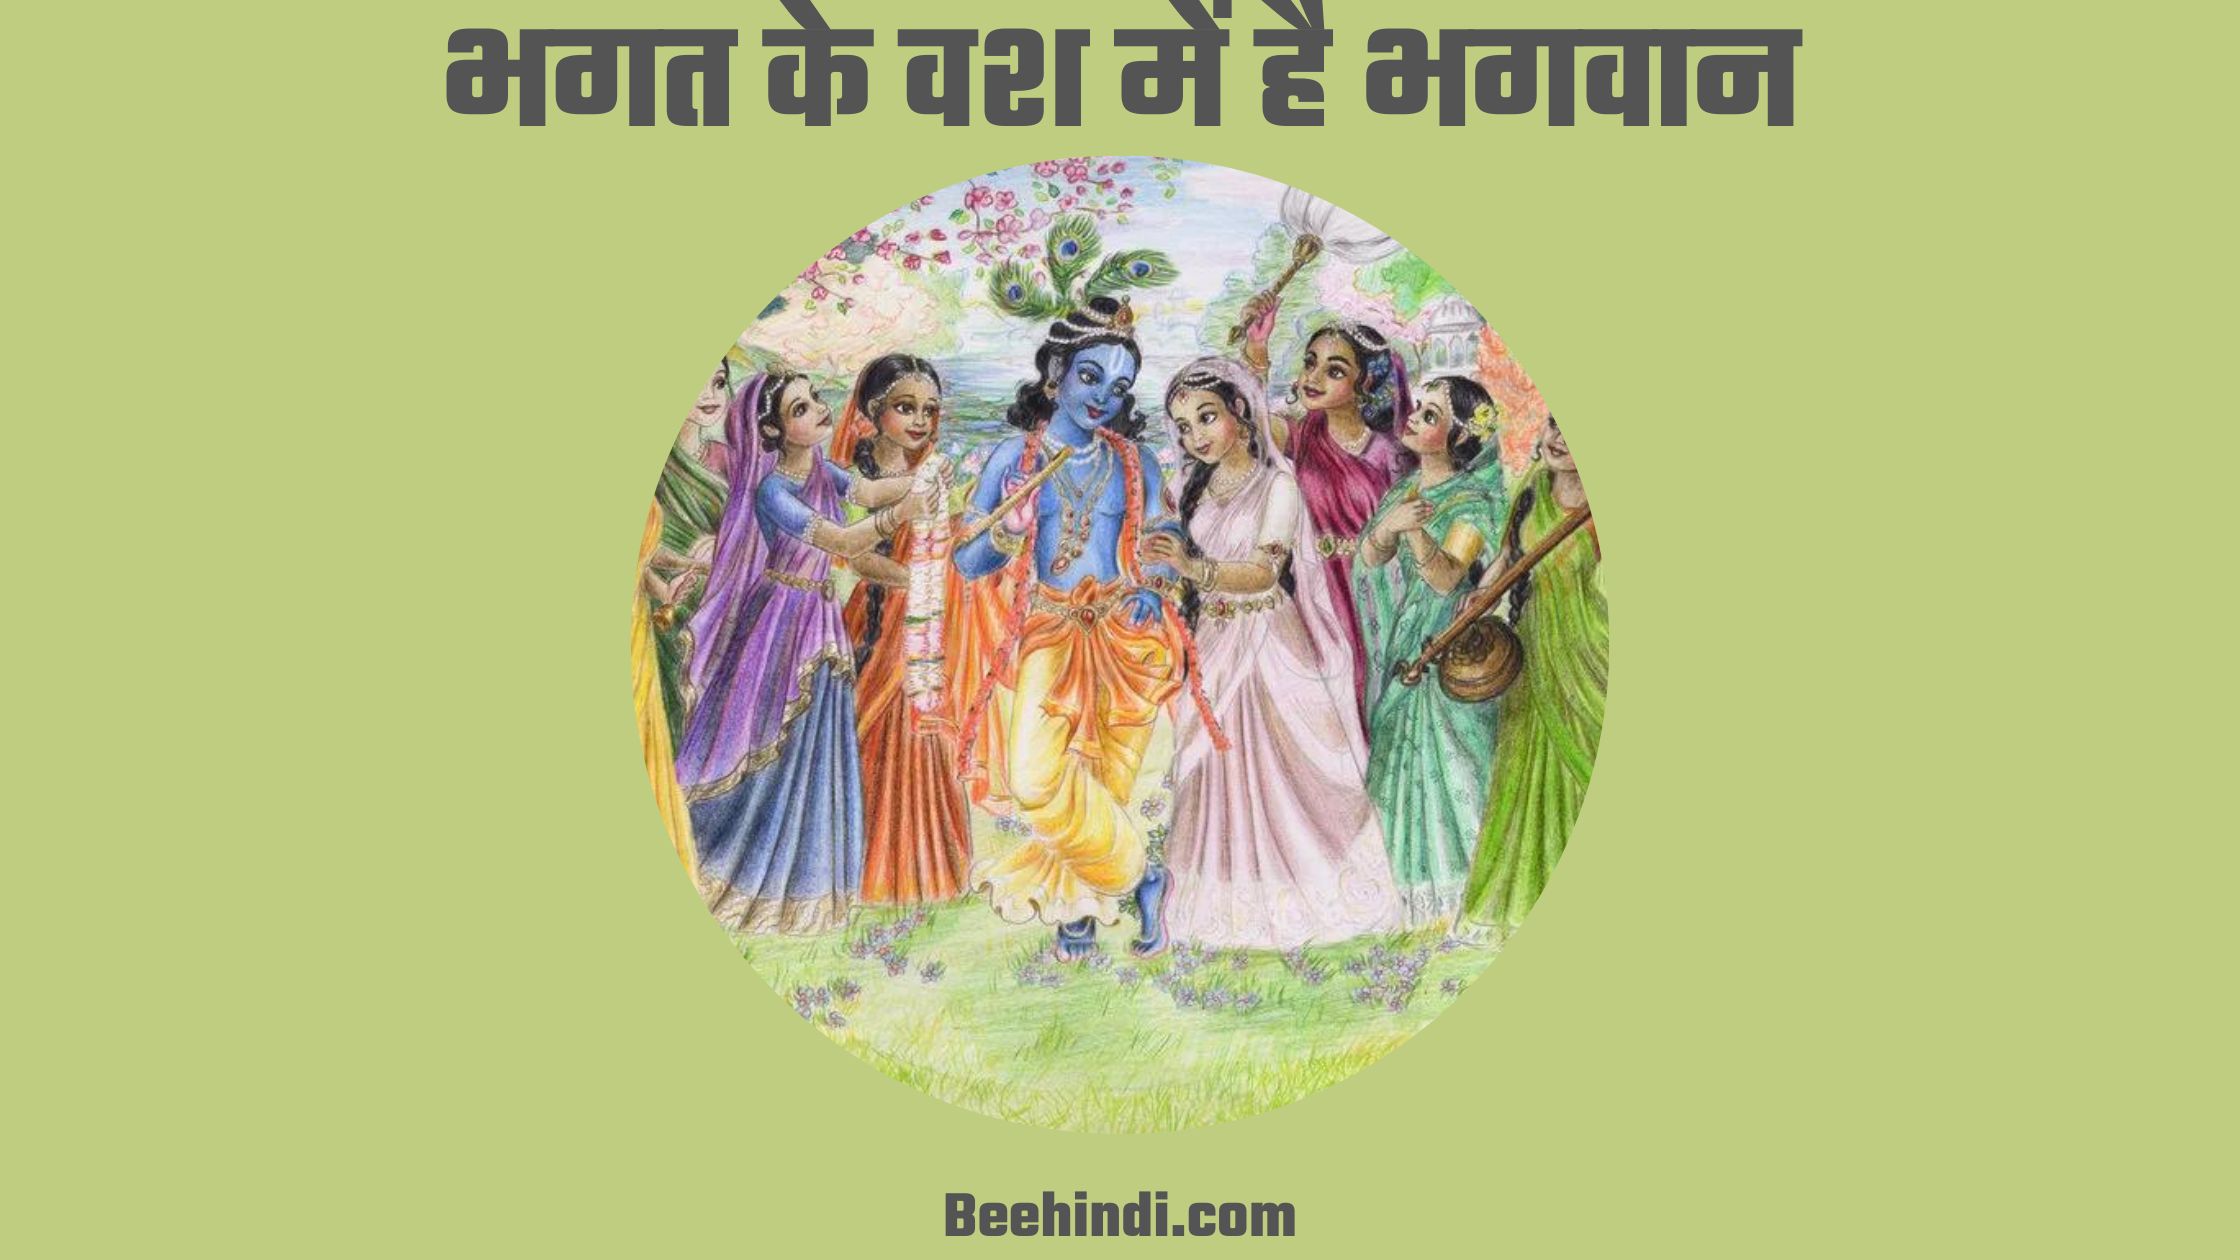 भगत के वश में है भगवान भजन आरती लिरिक्स हिंदी में।